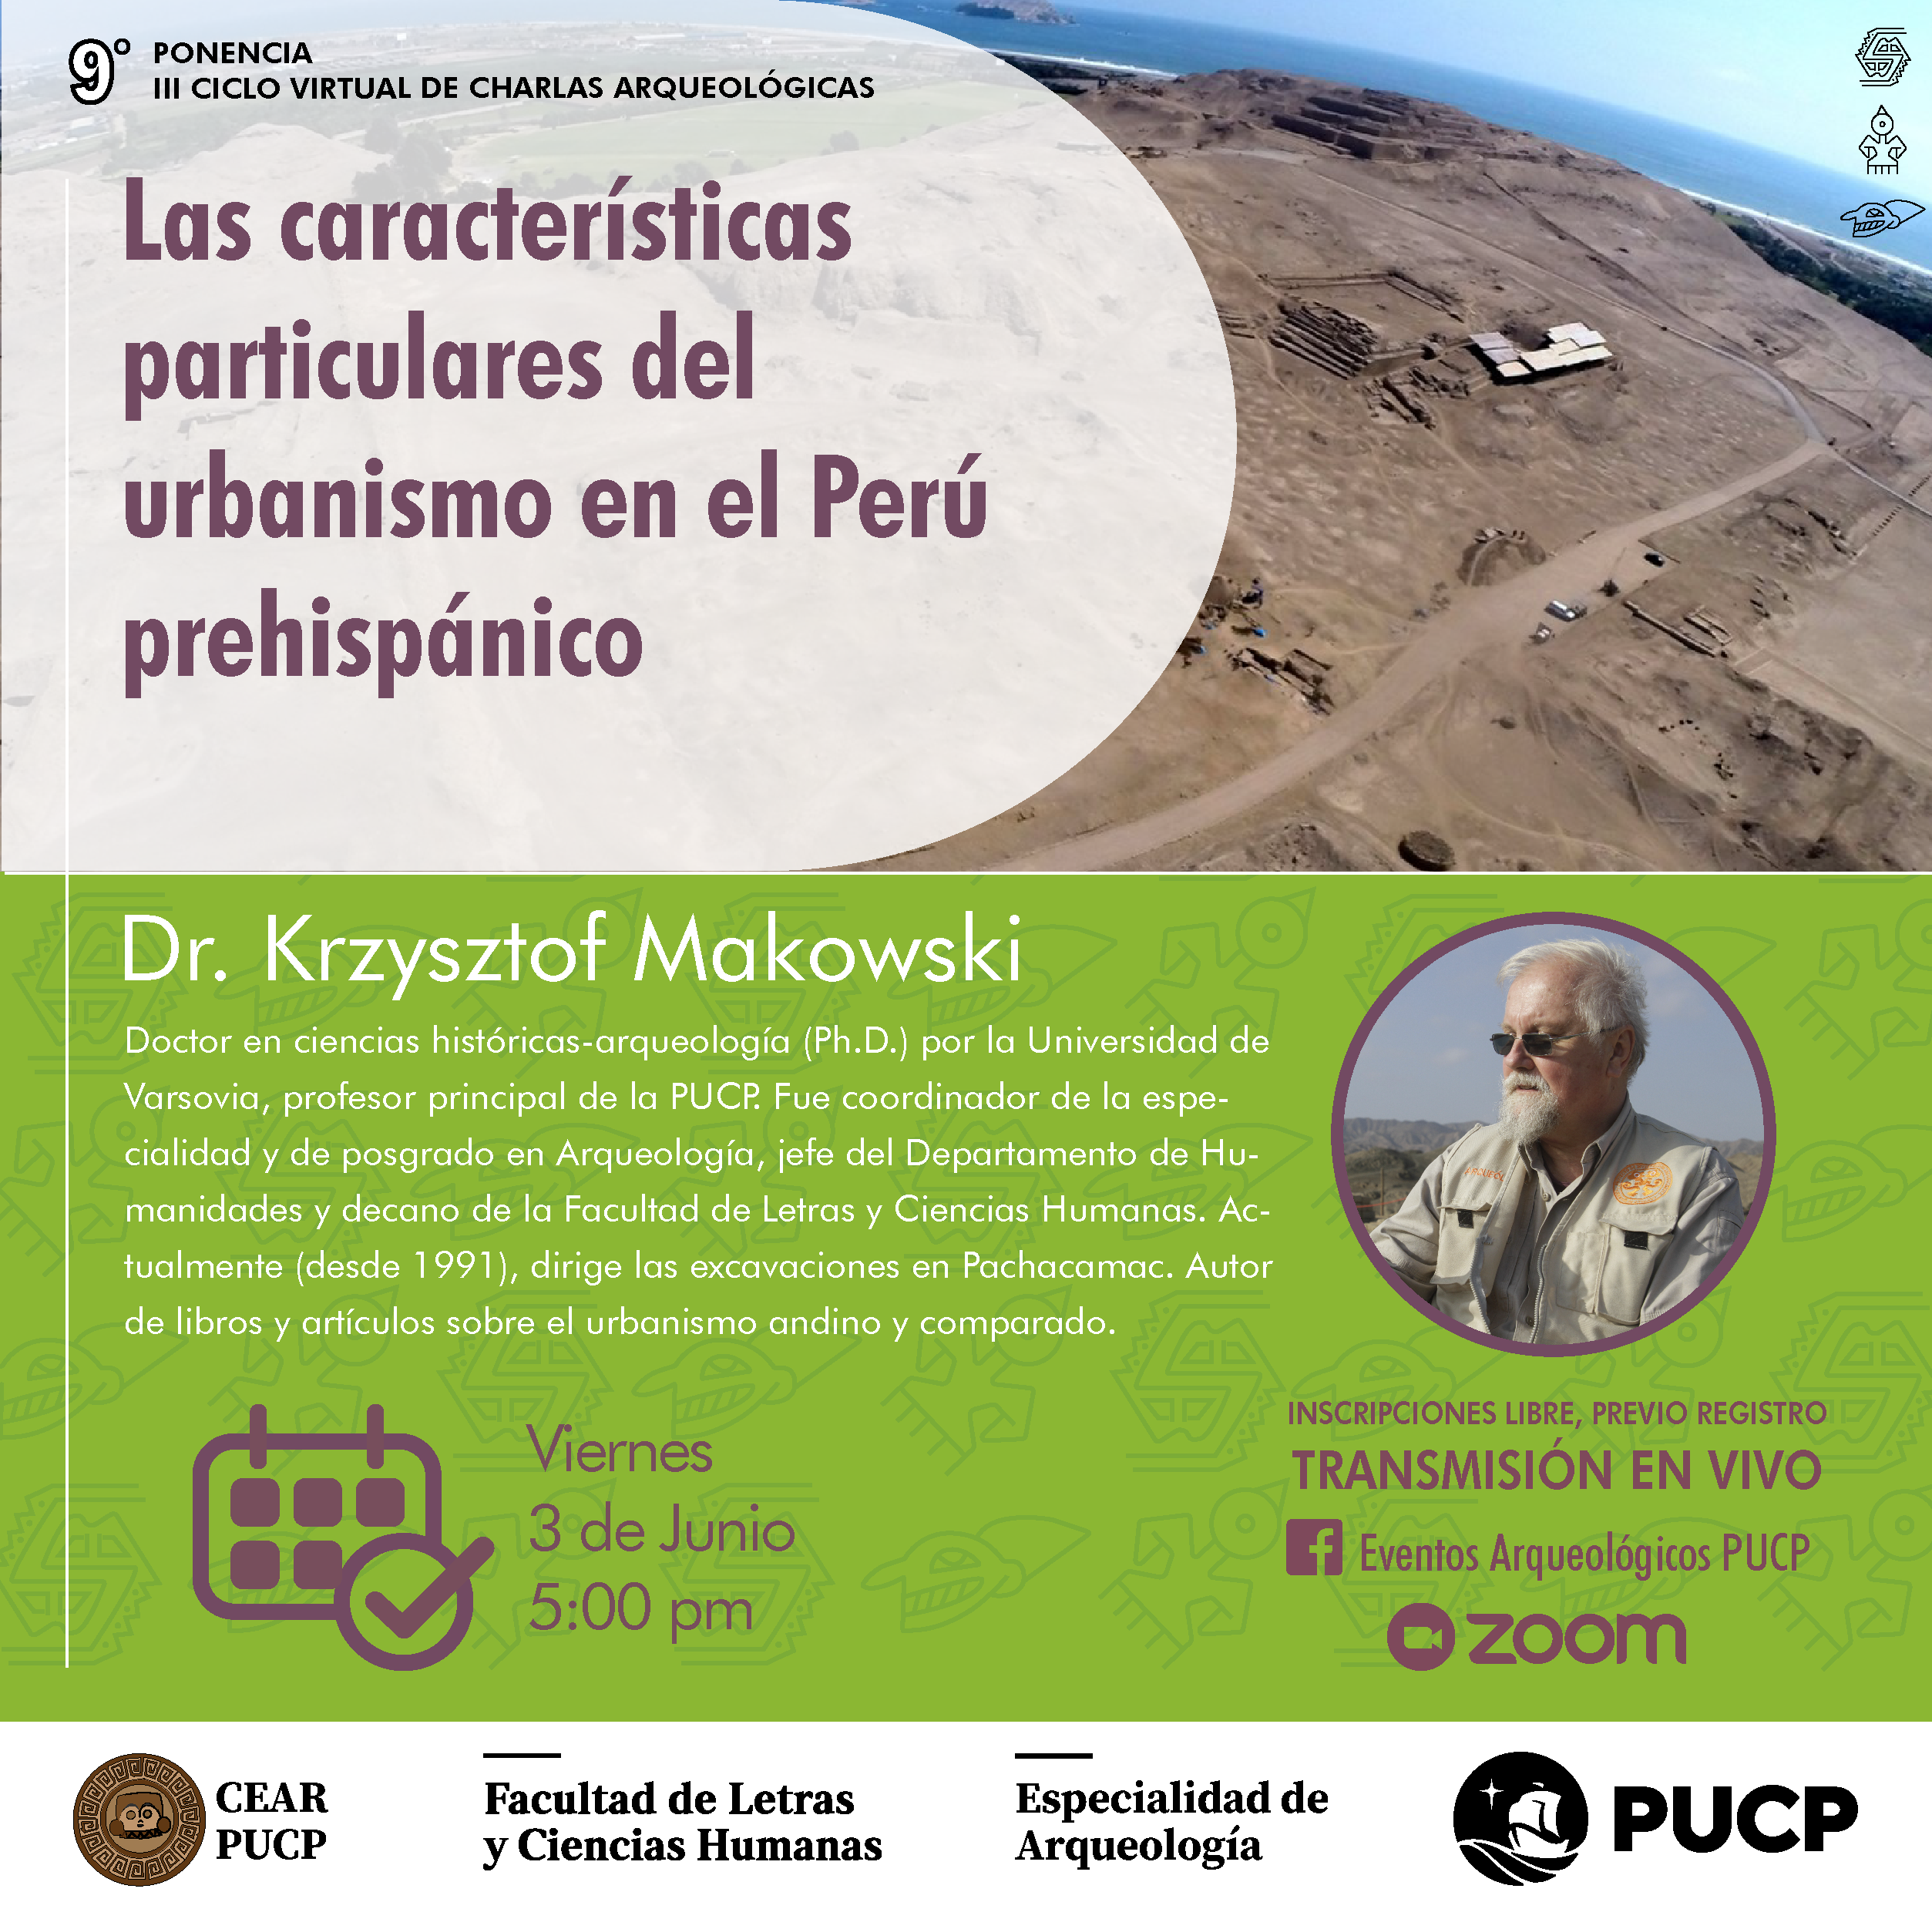 Las características particulares del urbanismo en el Perú prehispánico